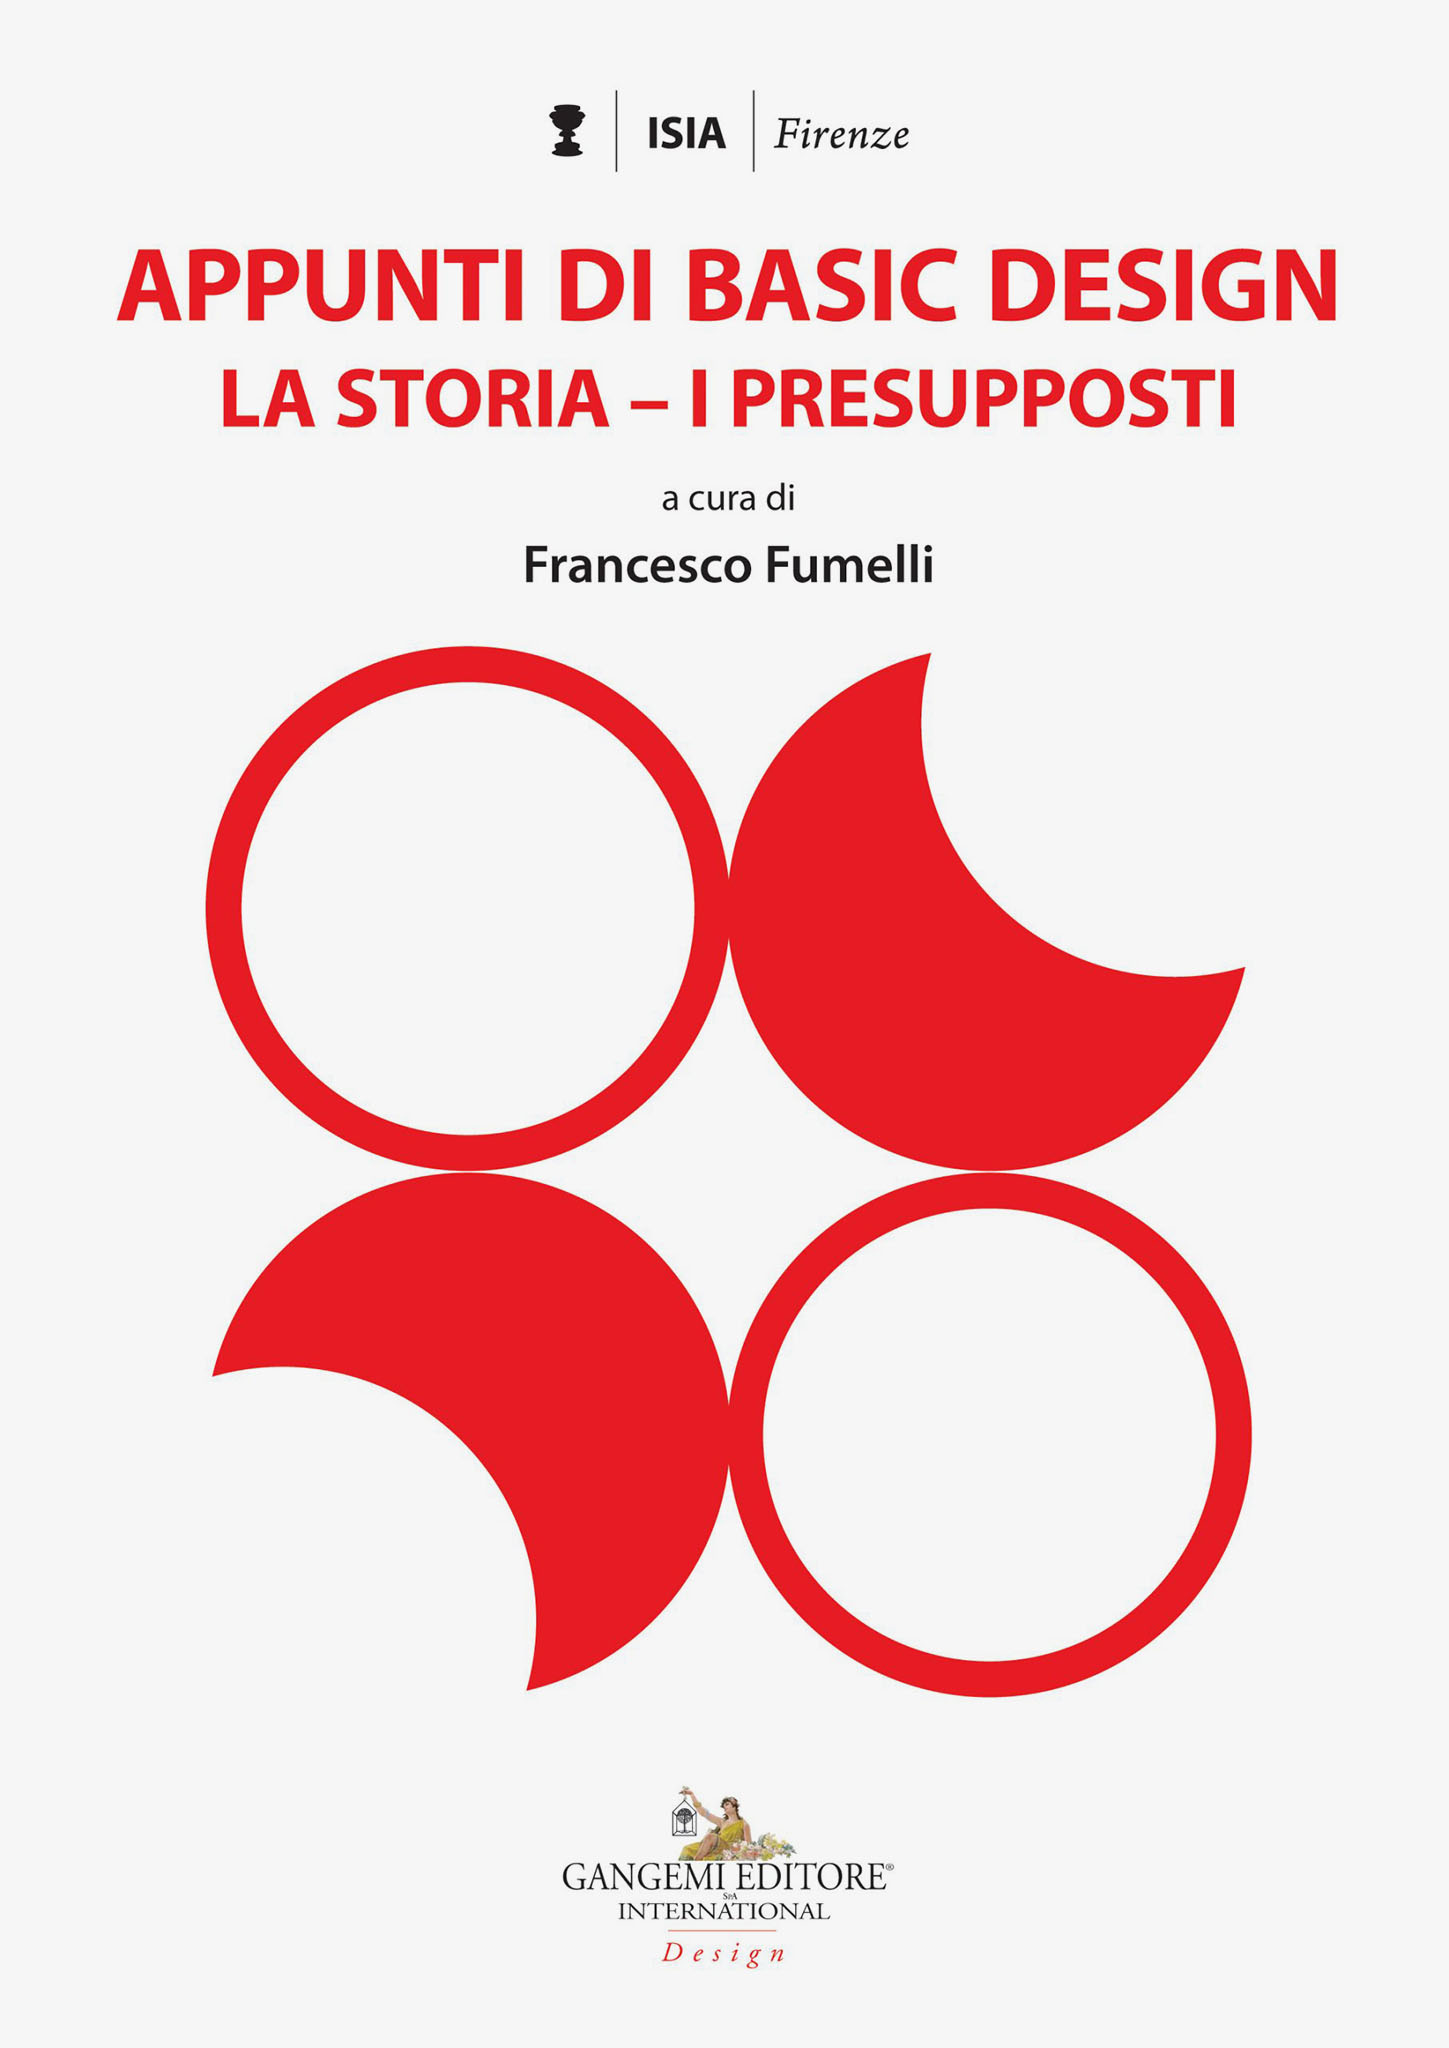 Copertina del libro "Appunti di Basic Design" di Francesco Fumelli